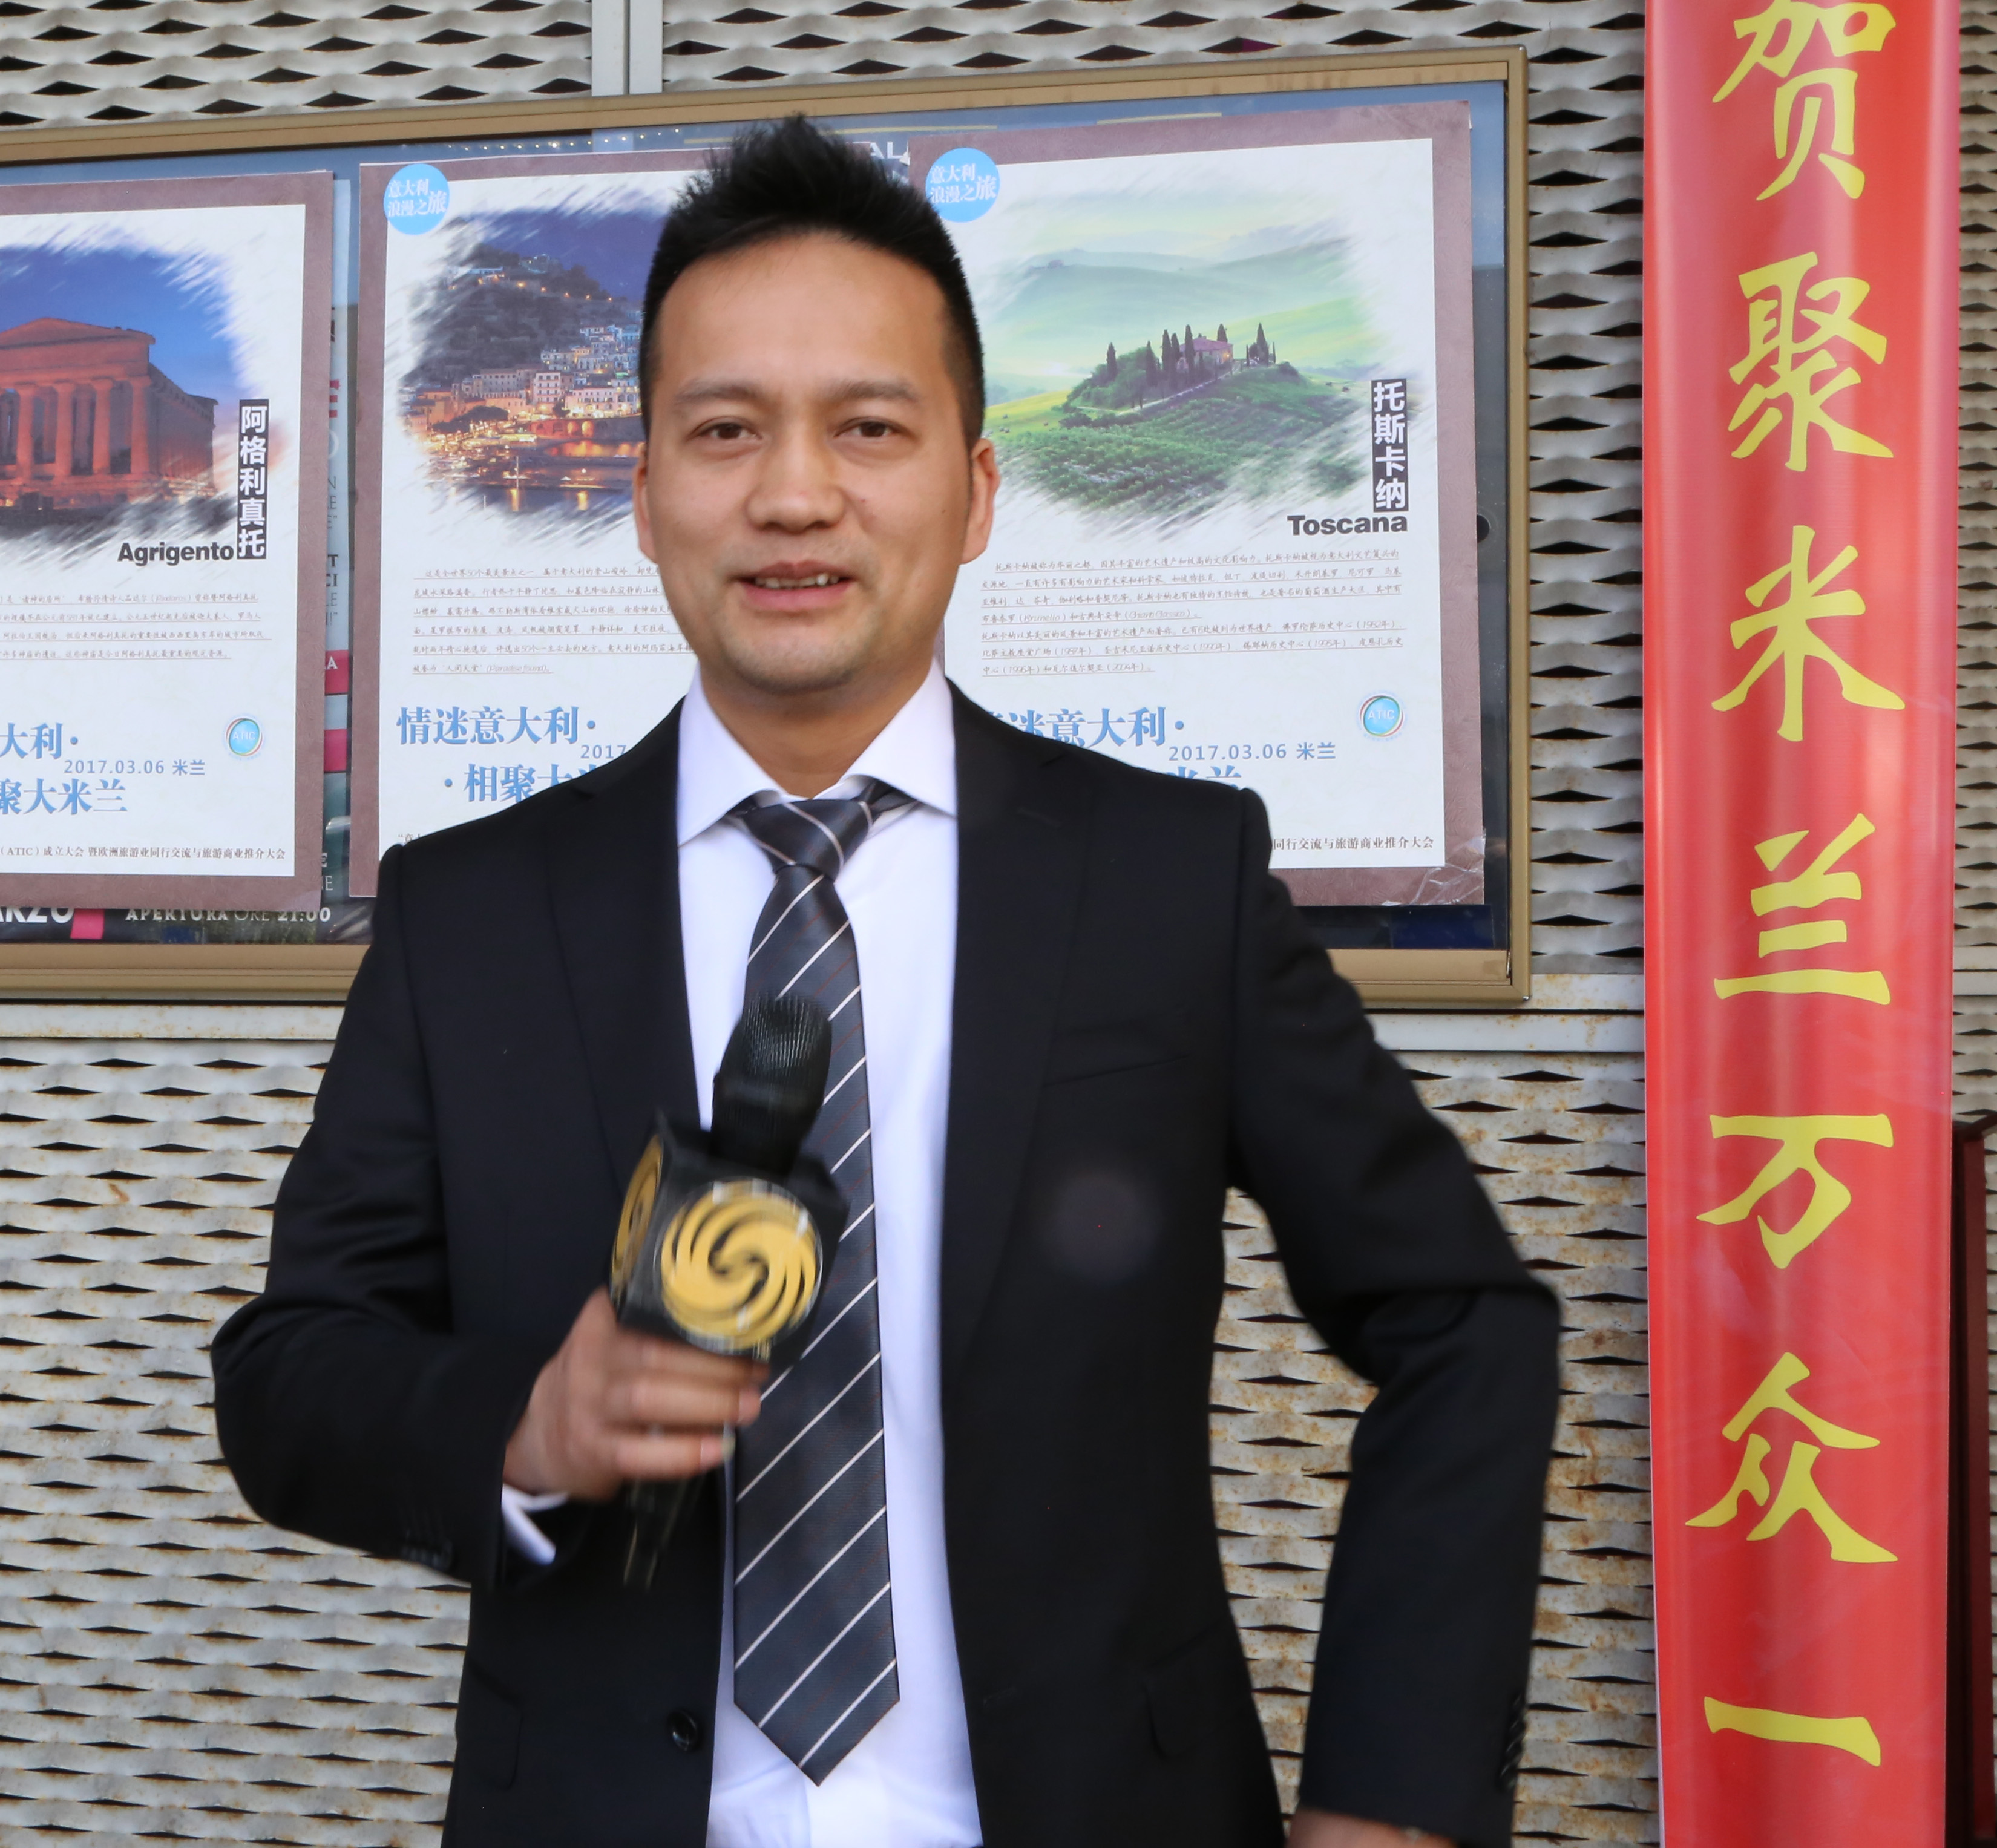 推进华人导游业合法有序良性发展 意华人旅游协会成立